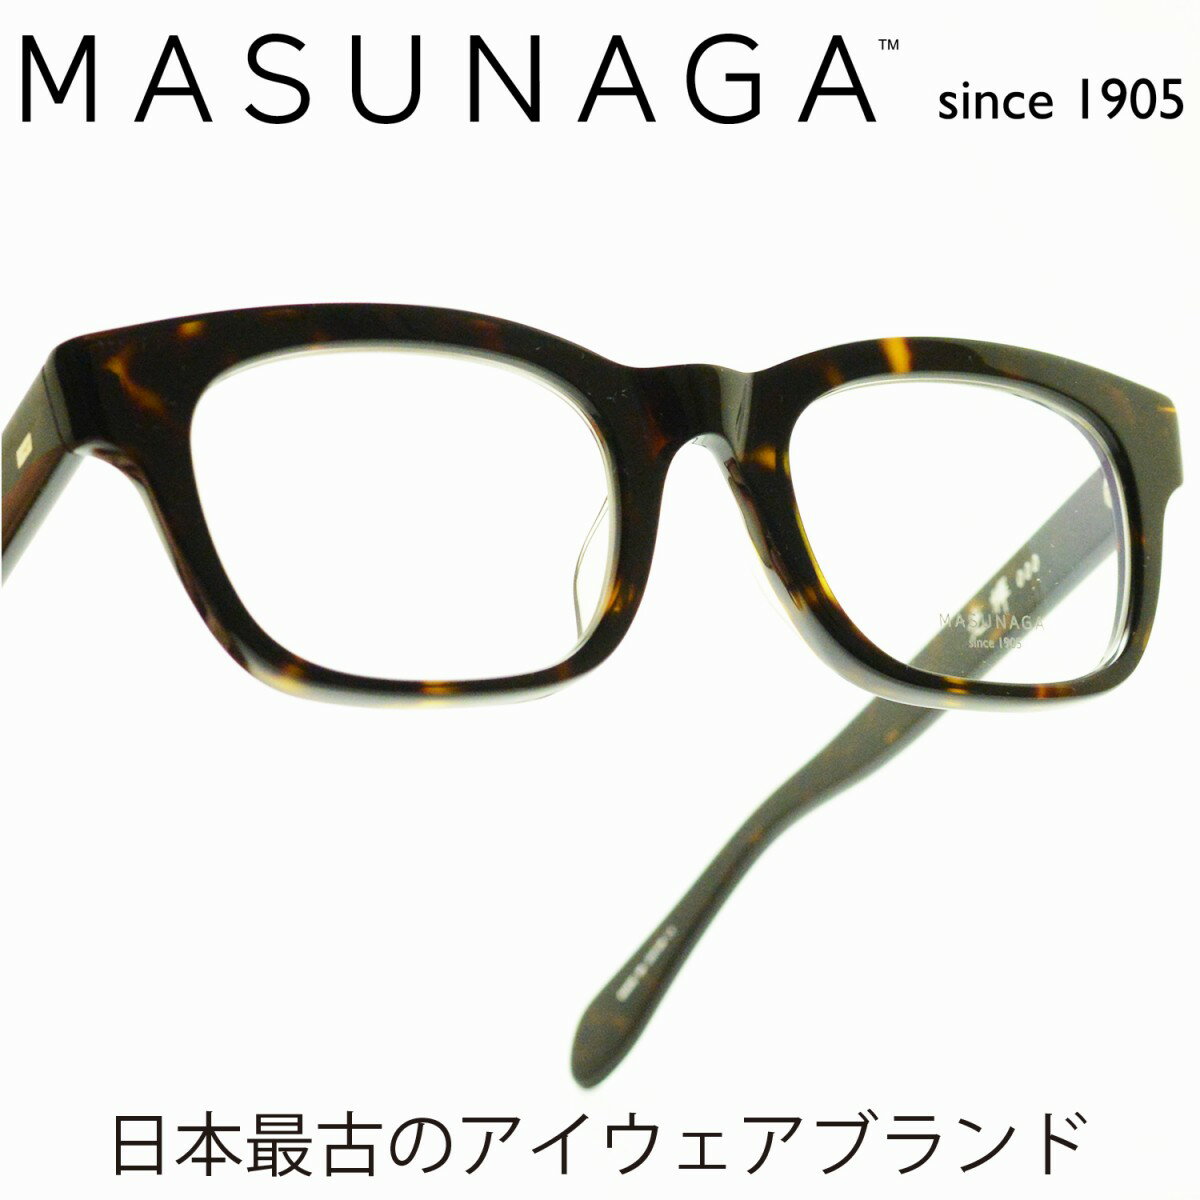 増永眼鏡 メガネ レディース 増永眼鏡 MASUNAGA 光輝 000 col-43 DEMIメガネ 眼鏡 めがね メンズ レディース おしゃれ ブランド 人気 おすすめ フレーム 流行り 度付き　レンズ